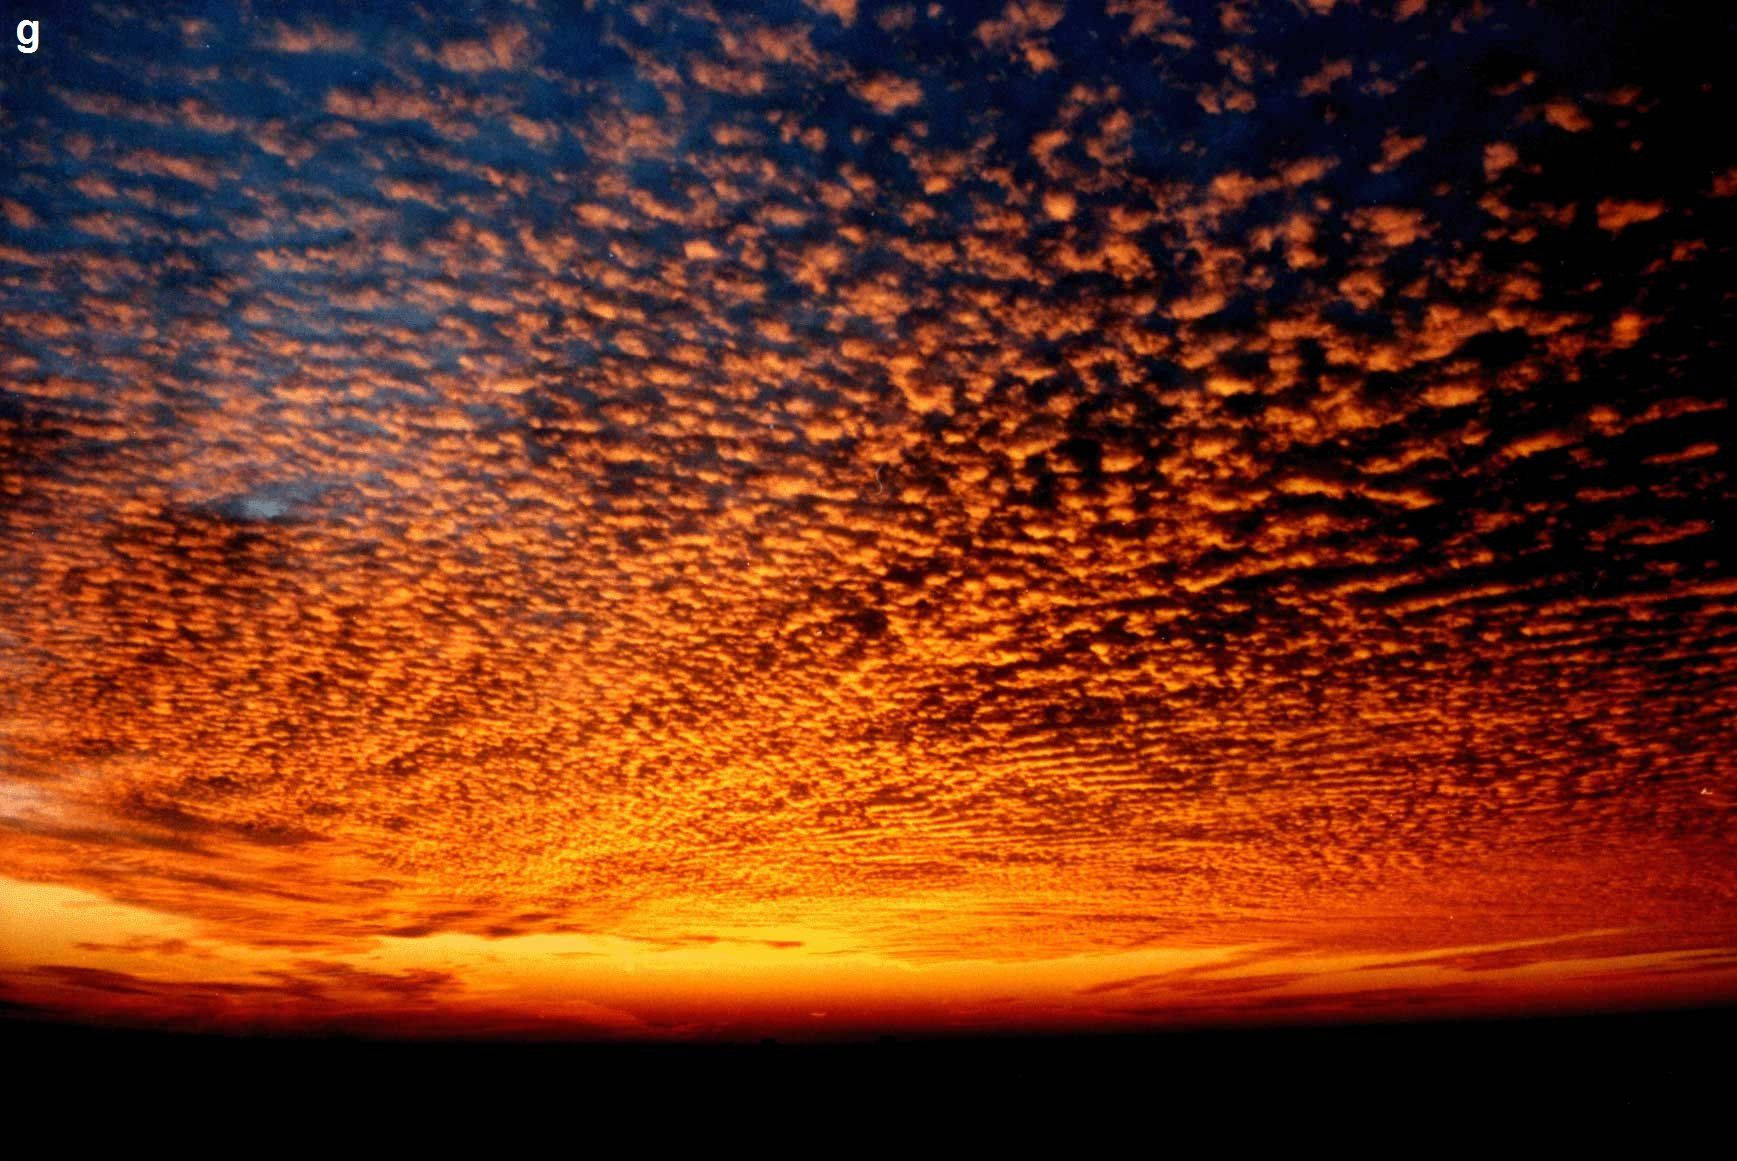 Sunset Sky Wallpaper